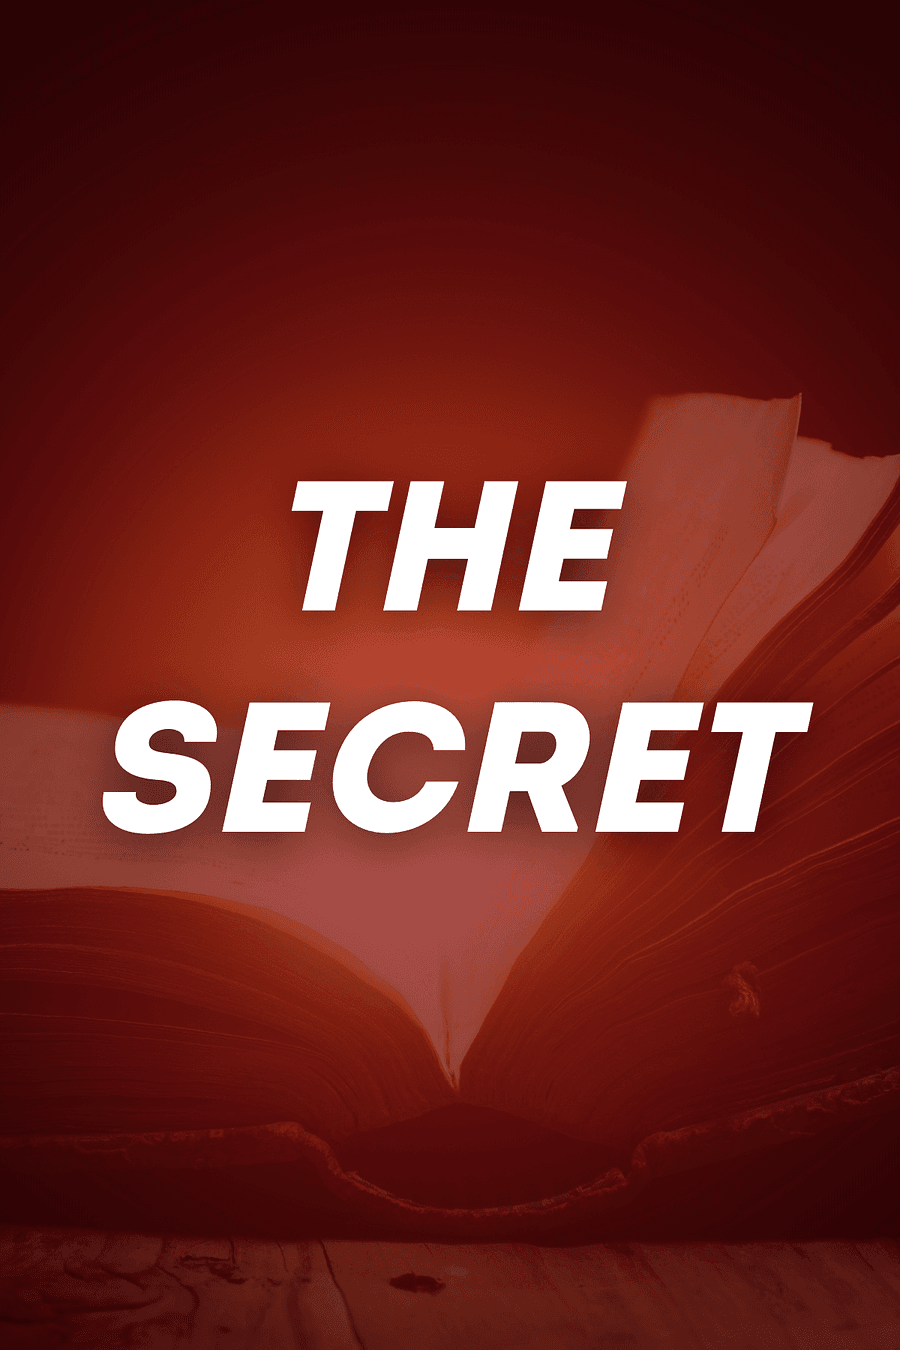 The Secret by Rhonda Byrne - Book Summary